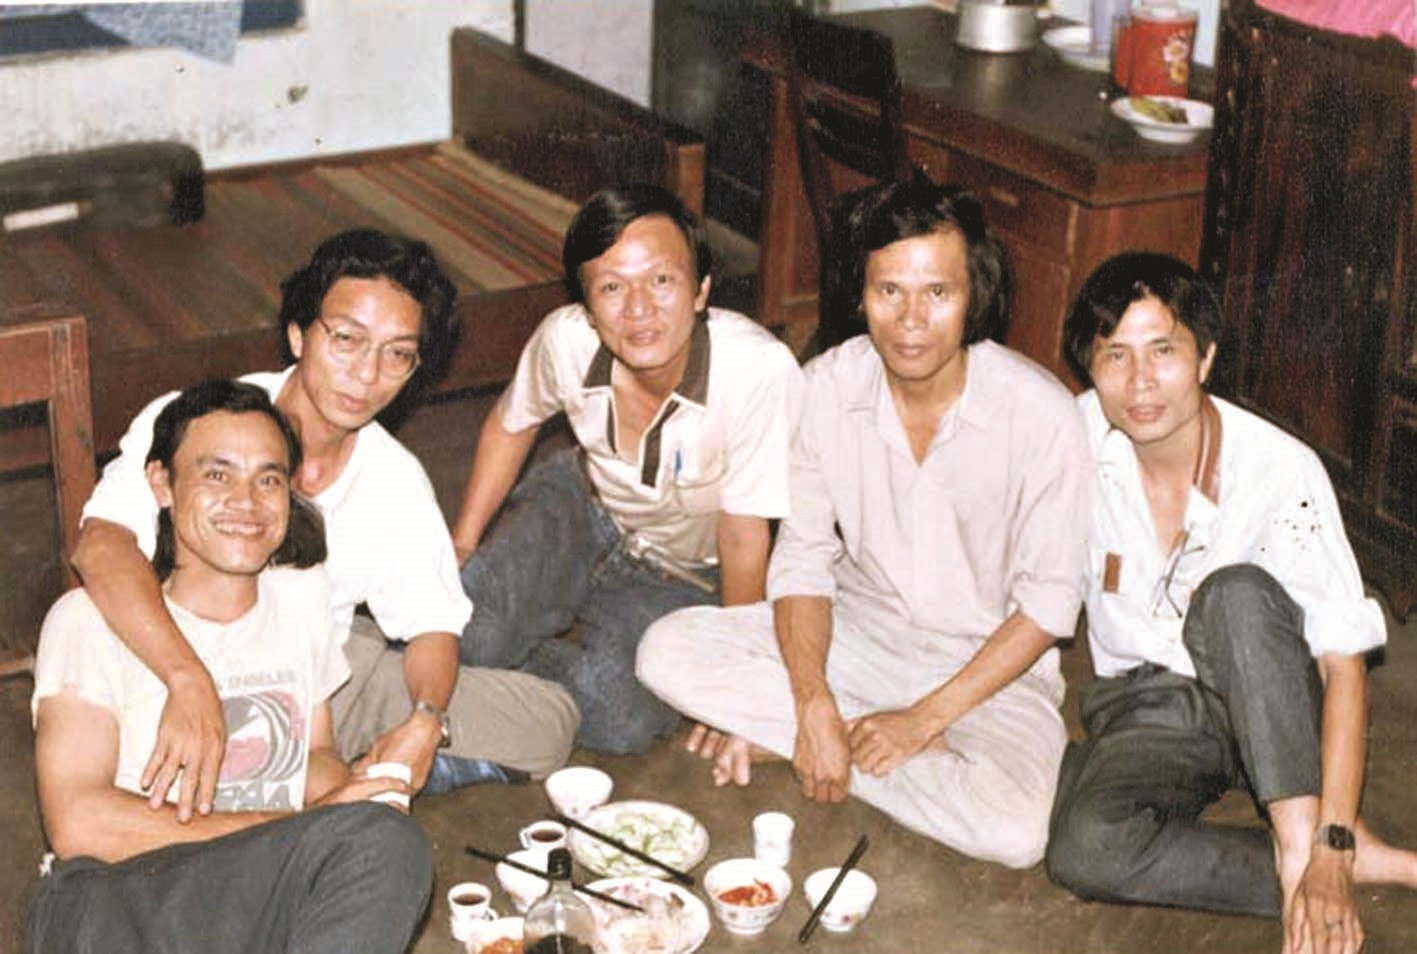 Nhà thơ Nguyễn Lương Ngọc (ngoài cùng bên trái) cùng bạn văn xứ Huế tại nhà thi sĩ Nguyễn Khắc Thạch năm 1993. Ảnh tư liệu của Trần Tuấn